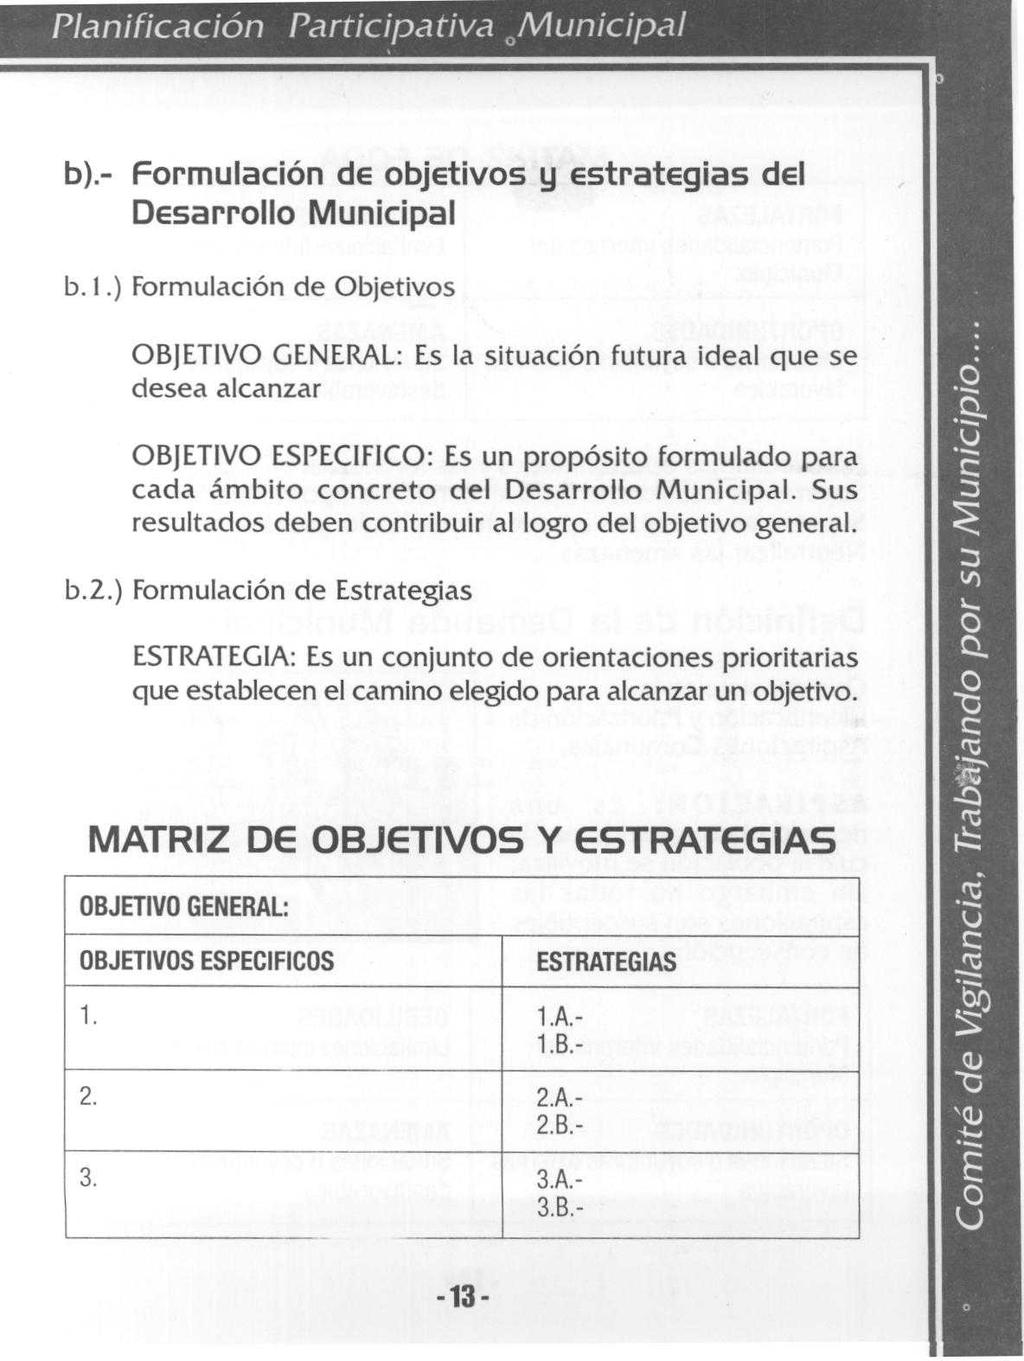 Planificación Participativa <Municipal b).- Formulación de obj tivos y EstratEgias del DESarrollo Municipal b. 1.